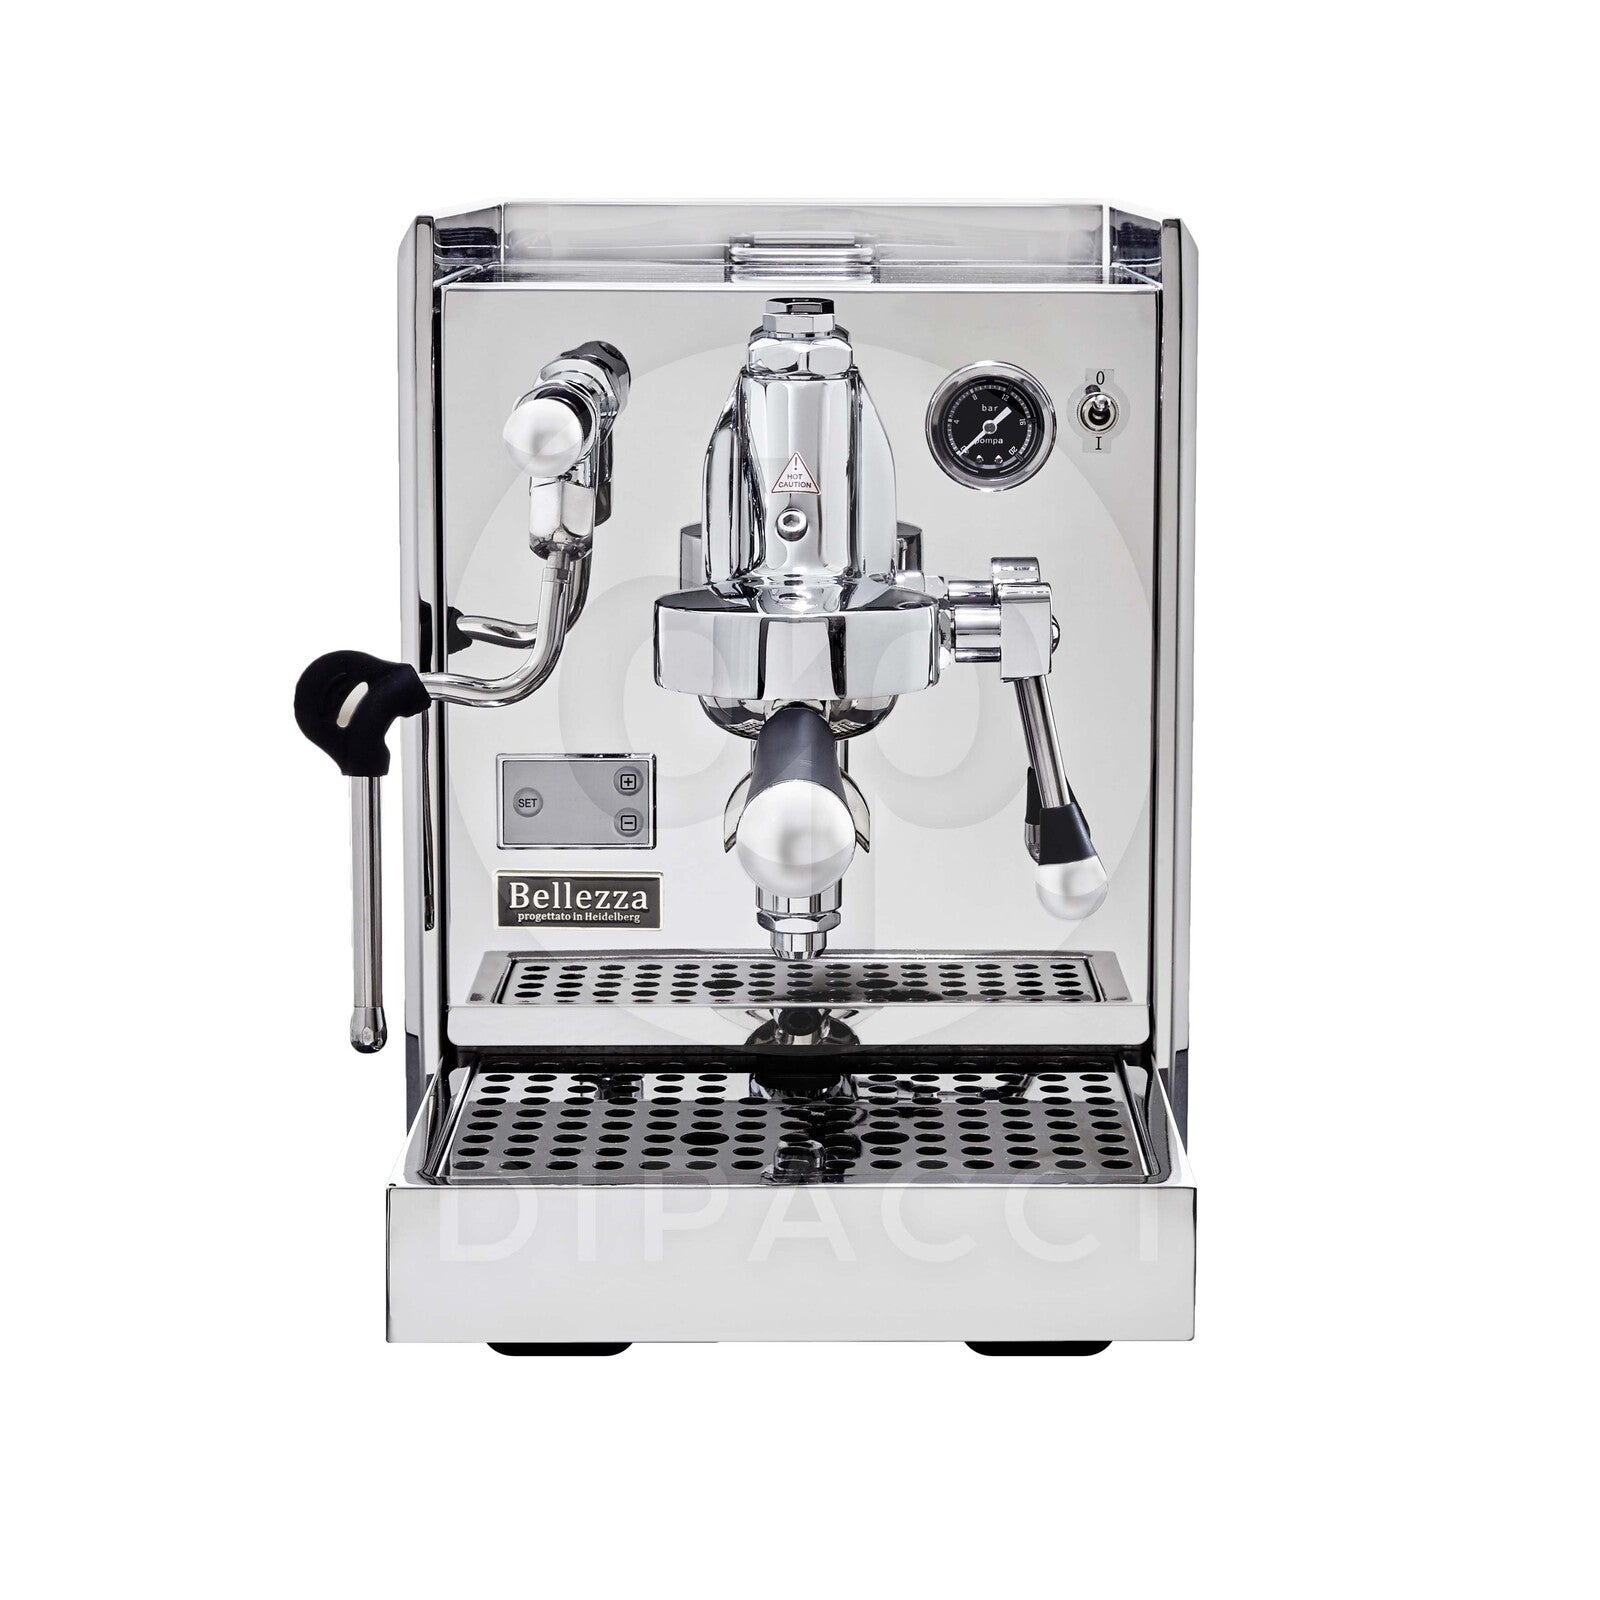 Bellezza Espresso Chiara Coffee Machine